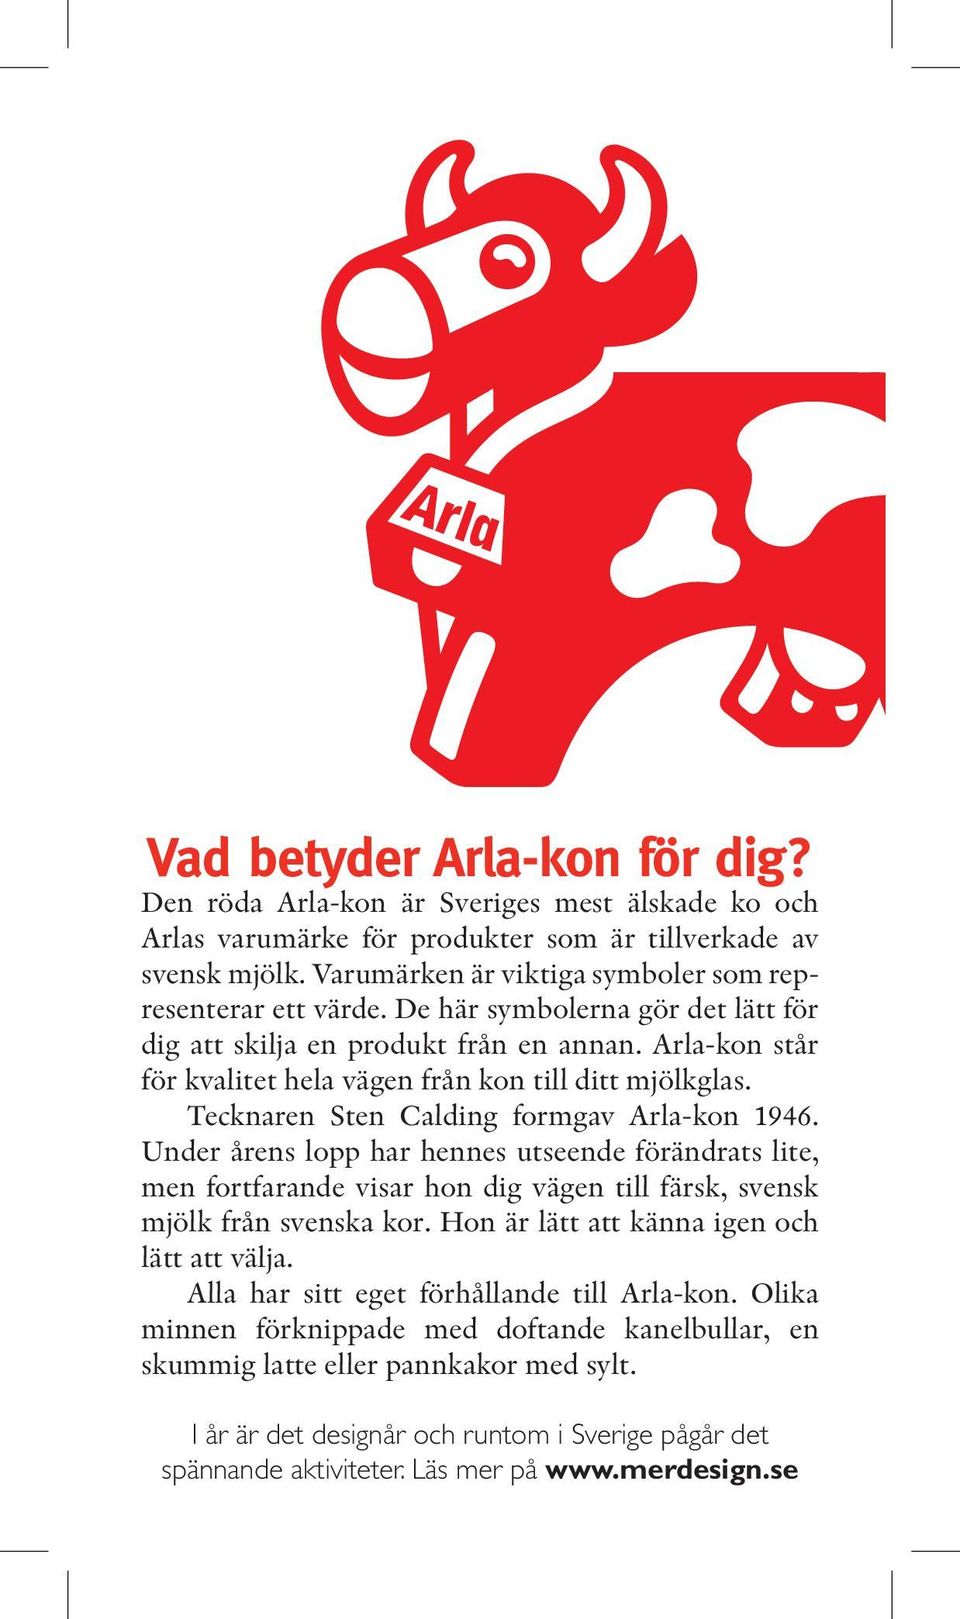 Arla-kon står för kvalitet hela vägen från kon till ditt mjölkglas. Tecknaren Sten Calding formgav Arla-kon 1946.